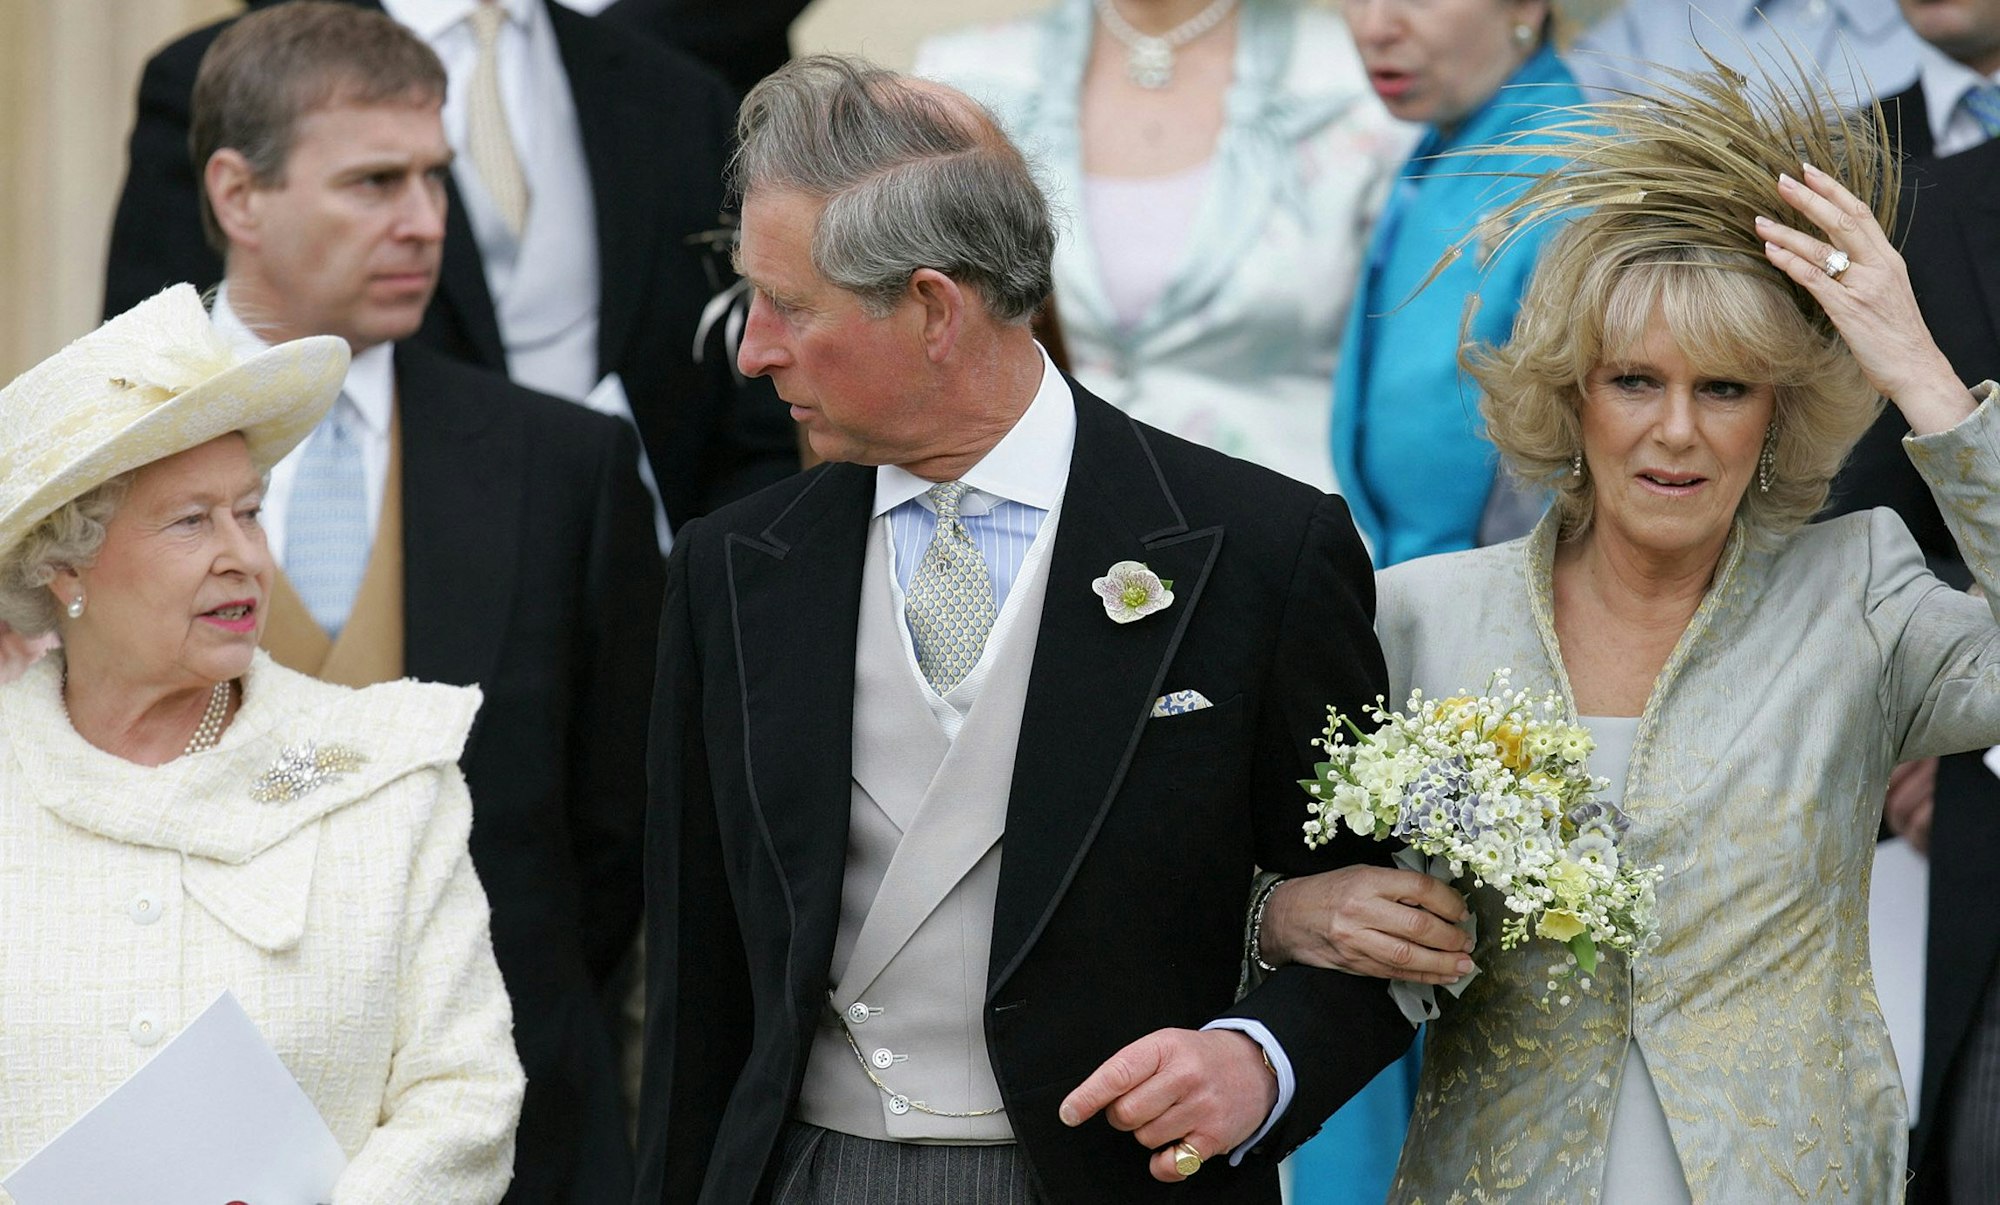 Königin Elizabeth II., Prinz Charles und seine Braut Camilla, Herzogin von Cornwall, verlassen die St. George's Chapel in Windsor.